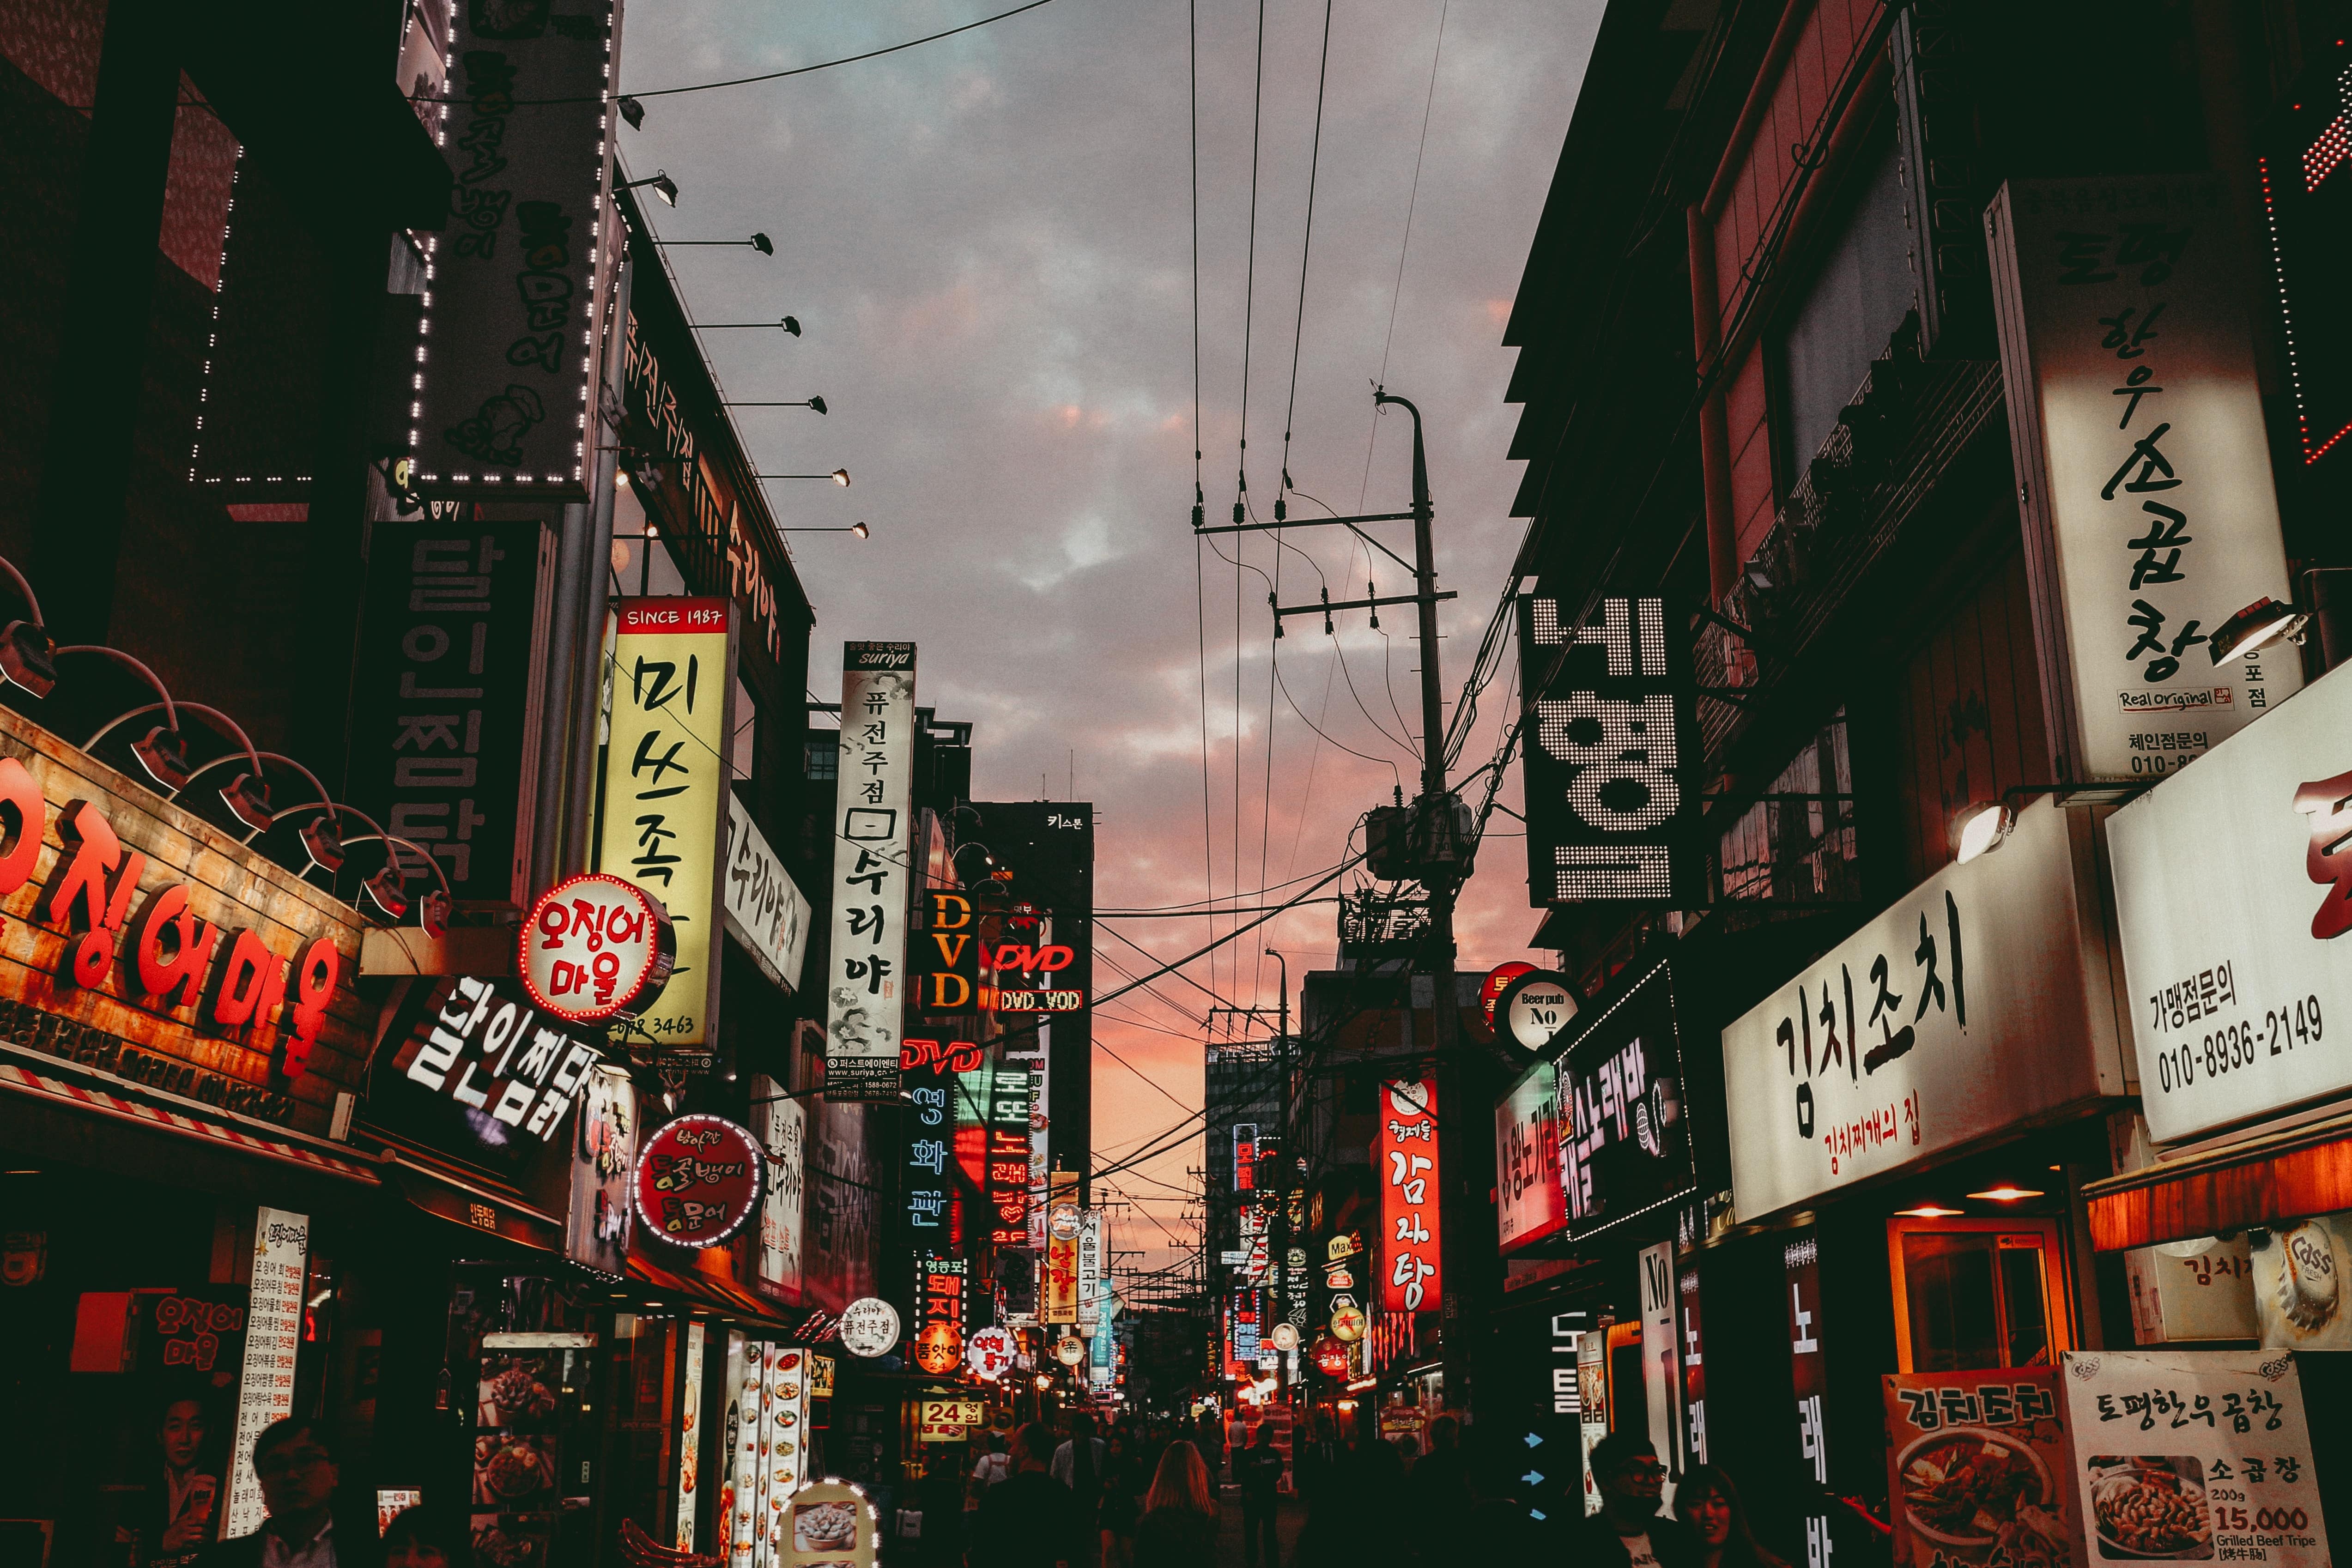 A Korean street lit up at sunset